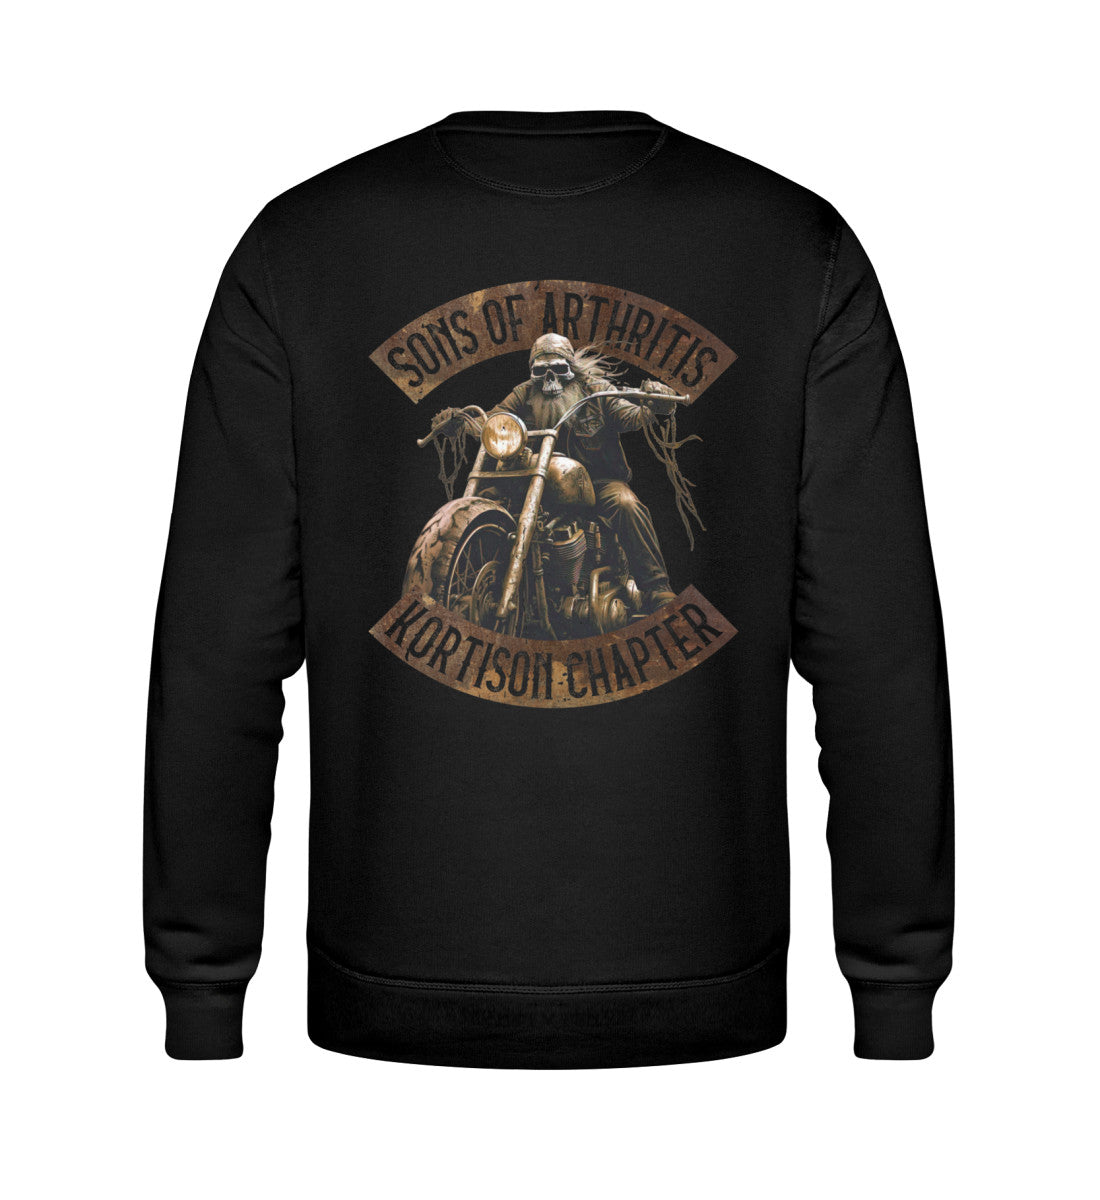 Ein Biker Sweatshirt für Motorradfahrer von Wingbikers mit dem Aufdruck, Sons of Arthritis - Kortison Chapter - Biker Veteran - als Back Print, in schwarz.